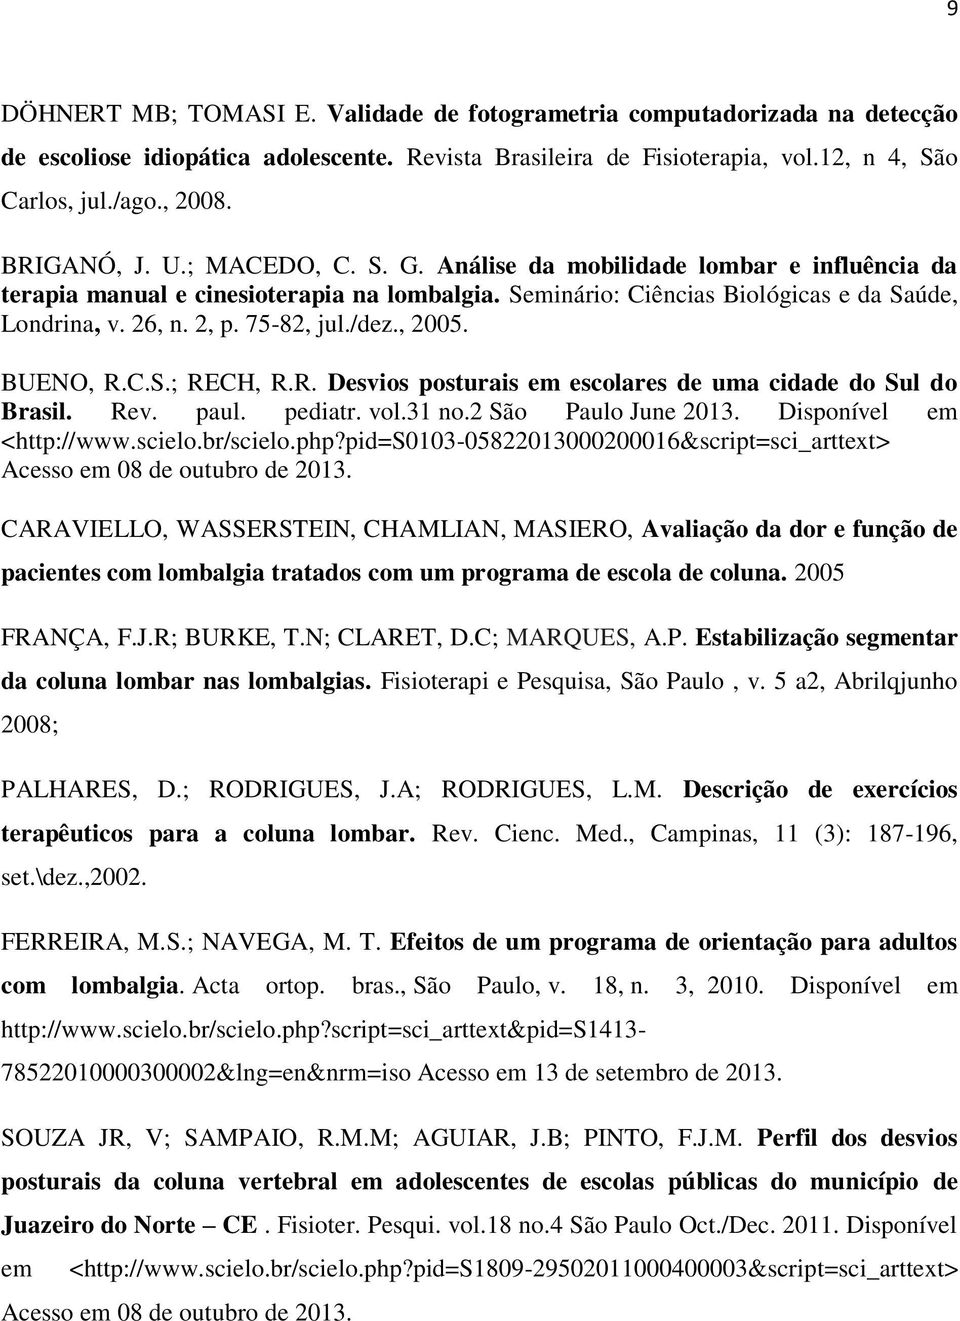 75-82, jul./dez., 2005. BUENO, R.C.S.; RECH, R.R. Desvios posturais em escolares de uma cidade do Sul do Brasil. Rev. paul. pediatr. vol.31 no.2 São Paulo June 2013. Disponível em <http://www.scielo.